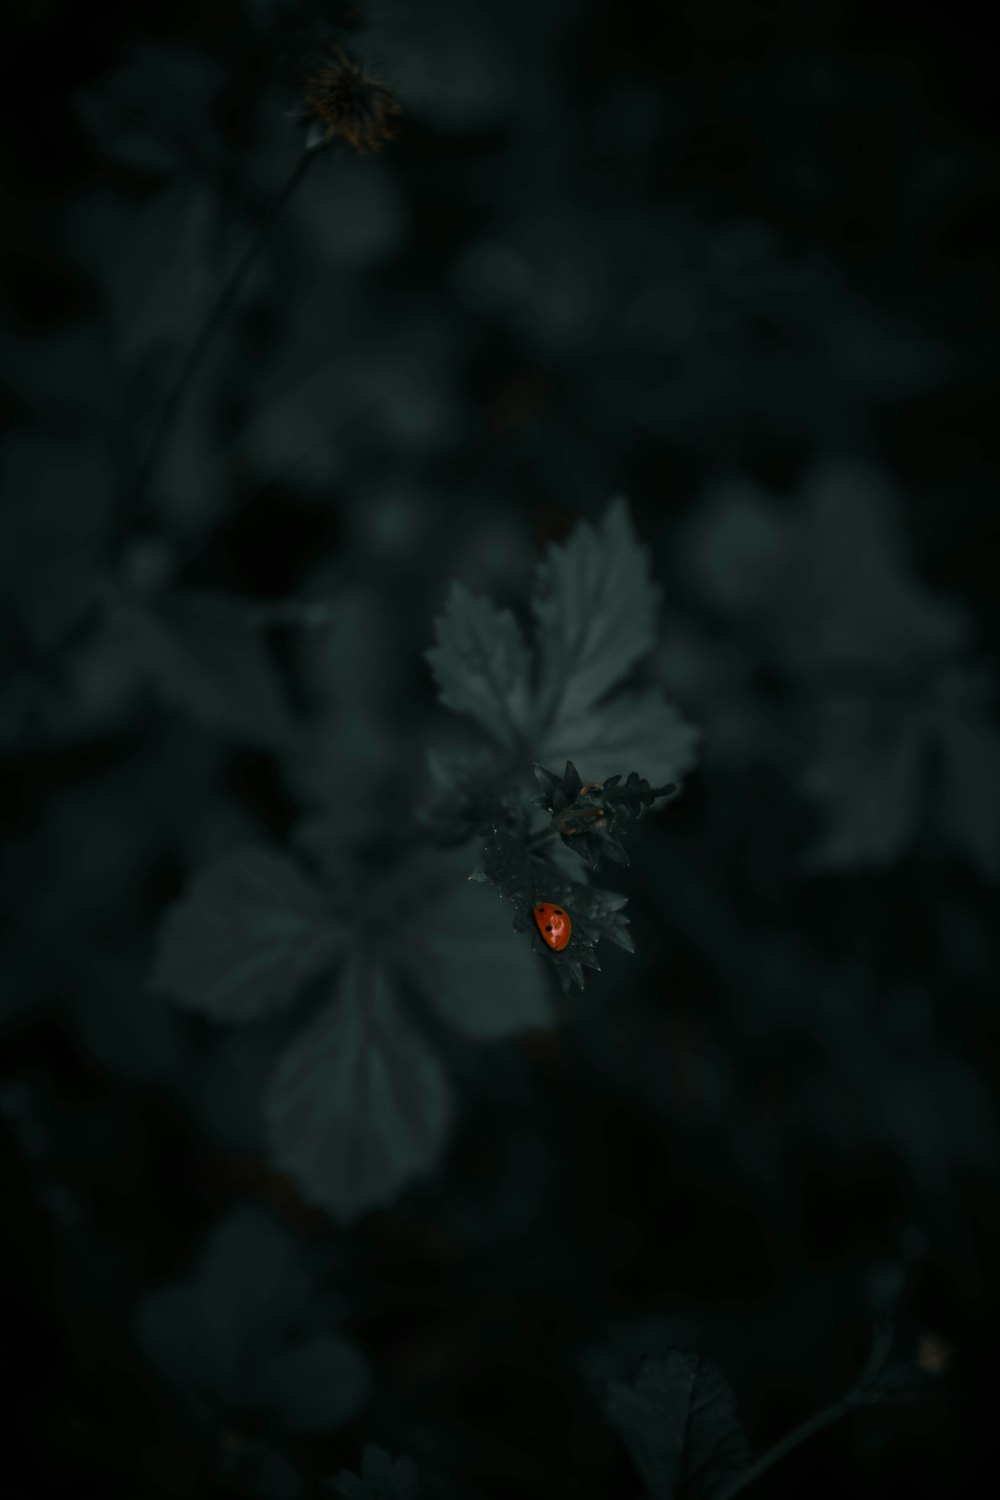 녹색 잎 식물에 빨간 무당 벌레